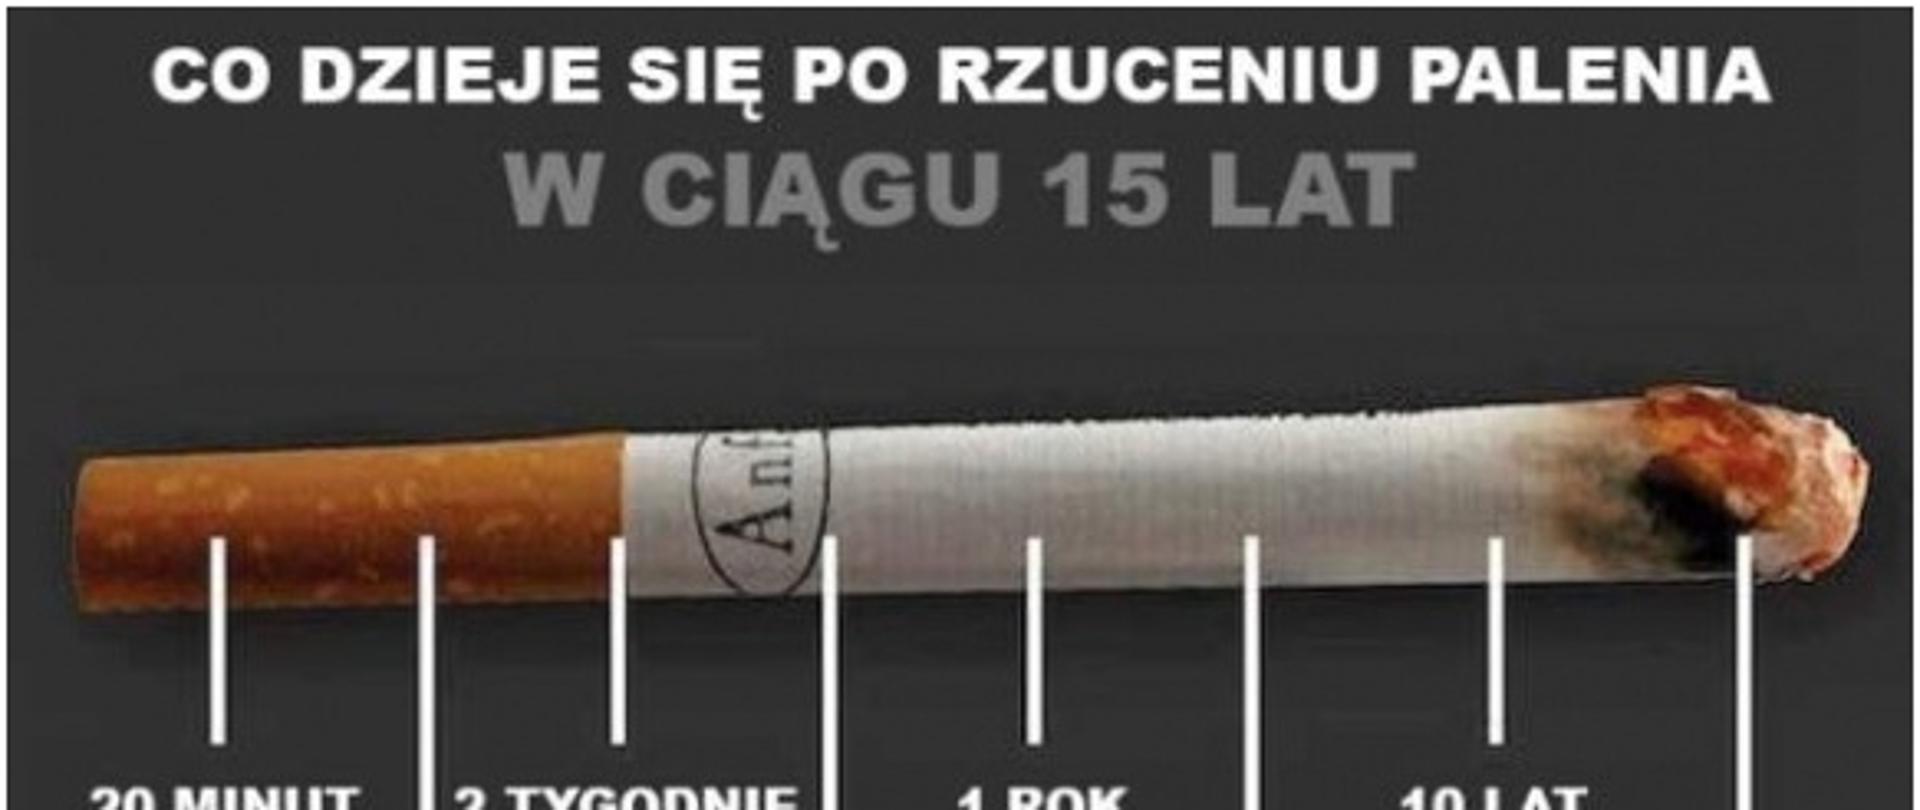 zdjęcie przedstawia papierosa i opis co dzieje się po rzuceniu palenia w ciągu 15 lat